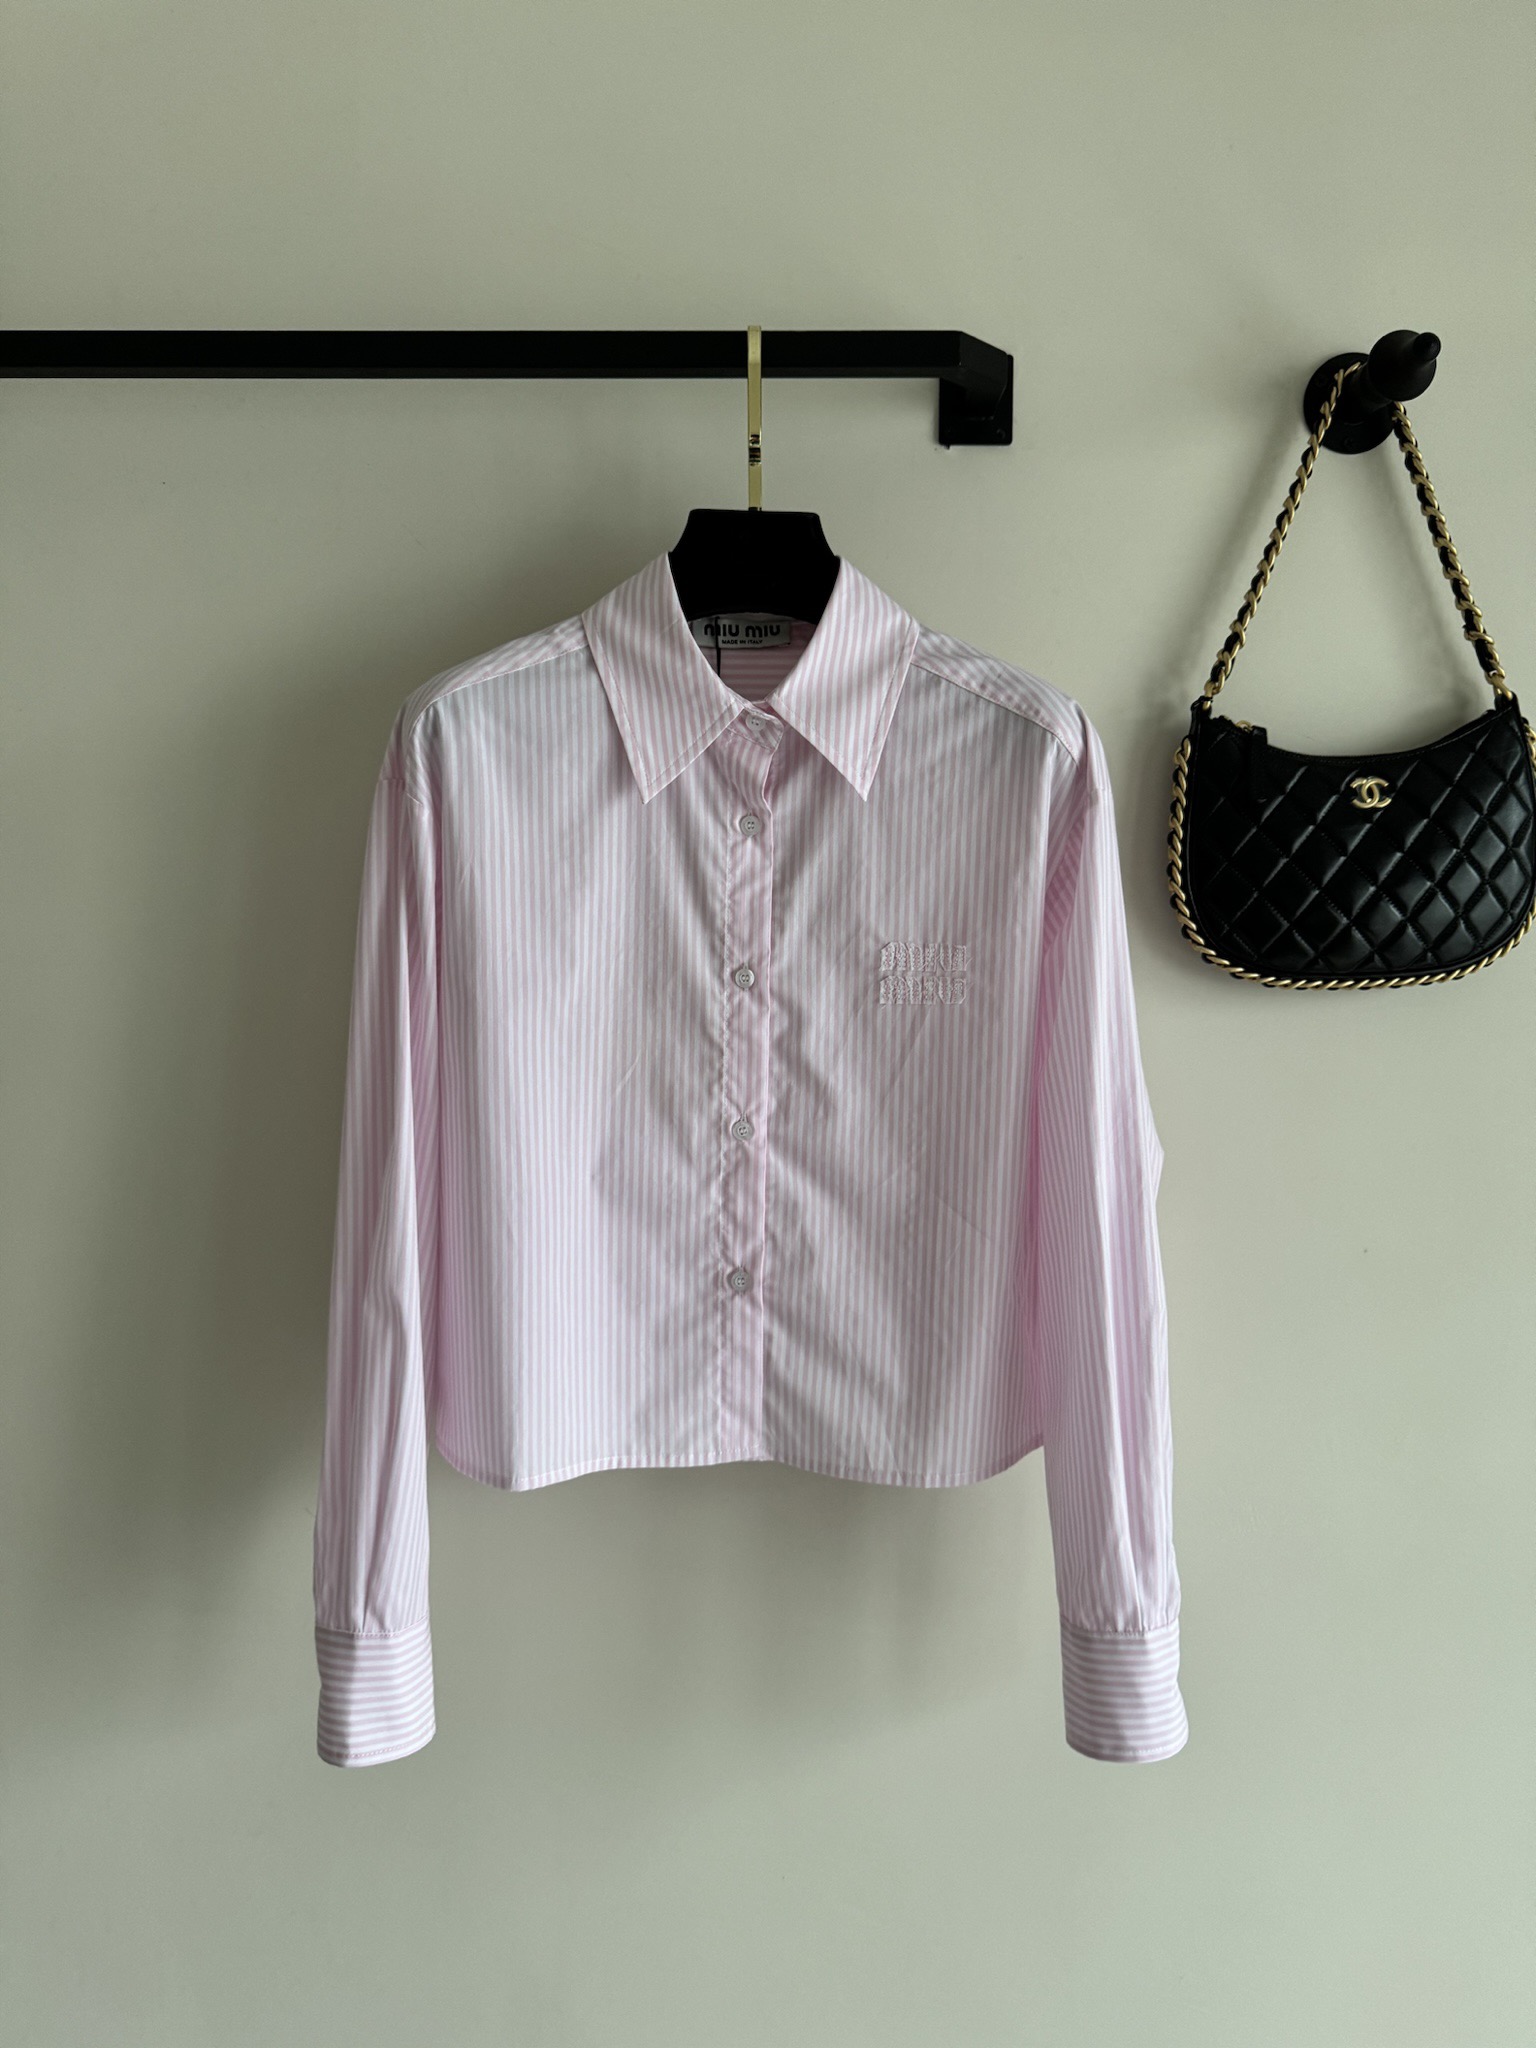 miumi*新款，早春新款衬衣，粉色条纹衬衫，刺绣logo超粉嫩的颜色ＳＭＬ.AE0666ezdjs